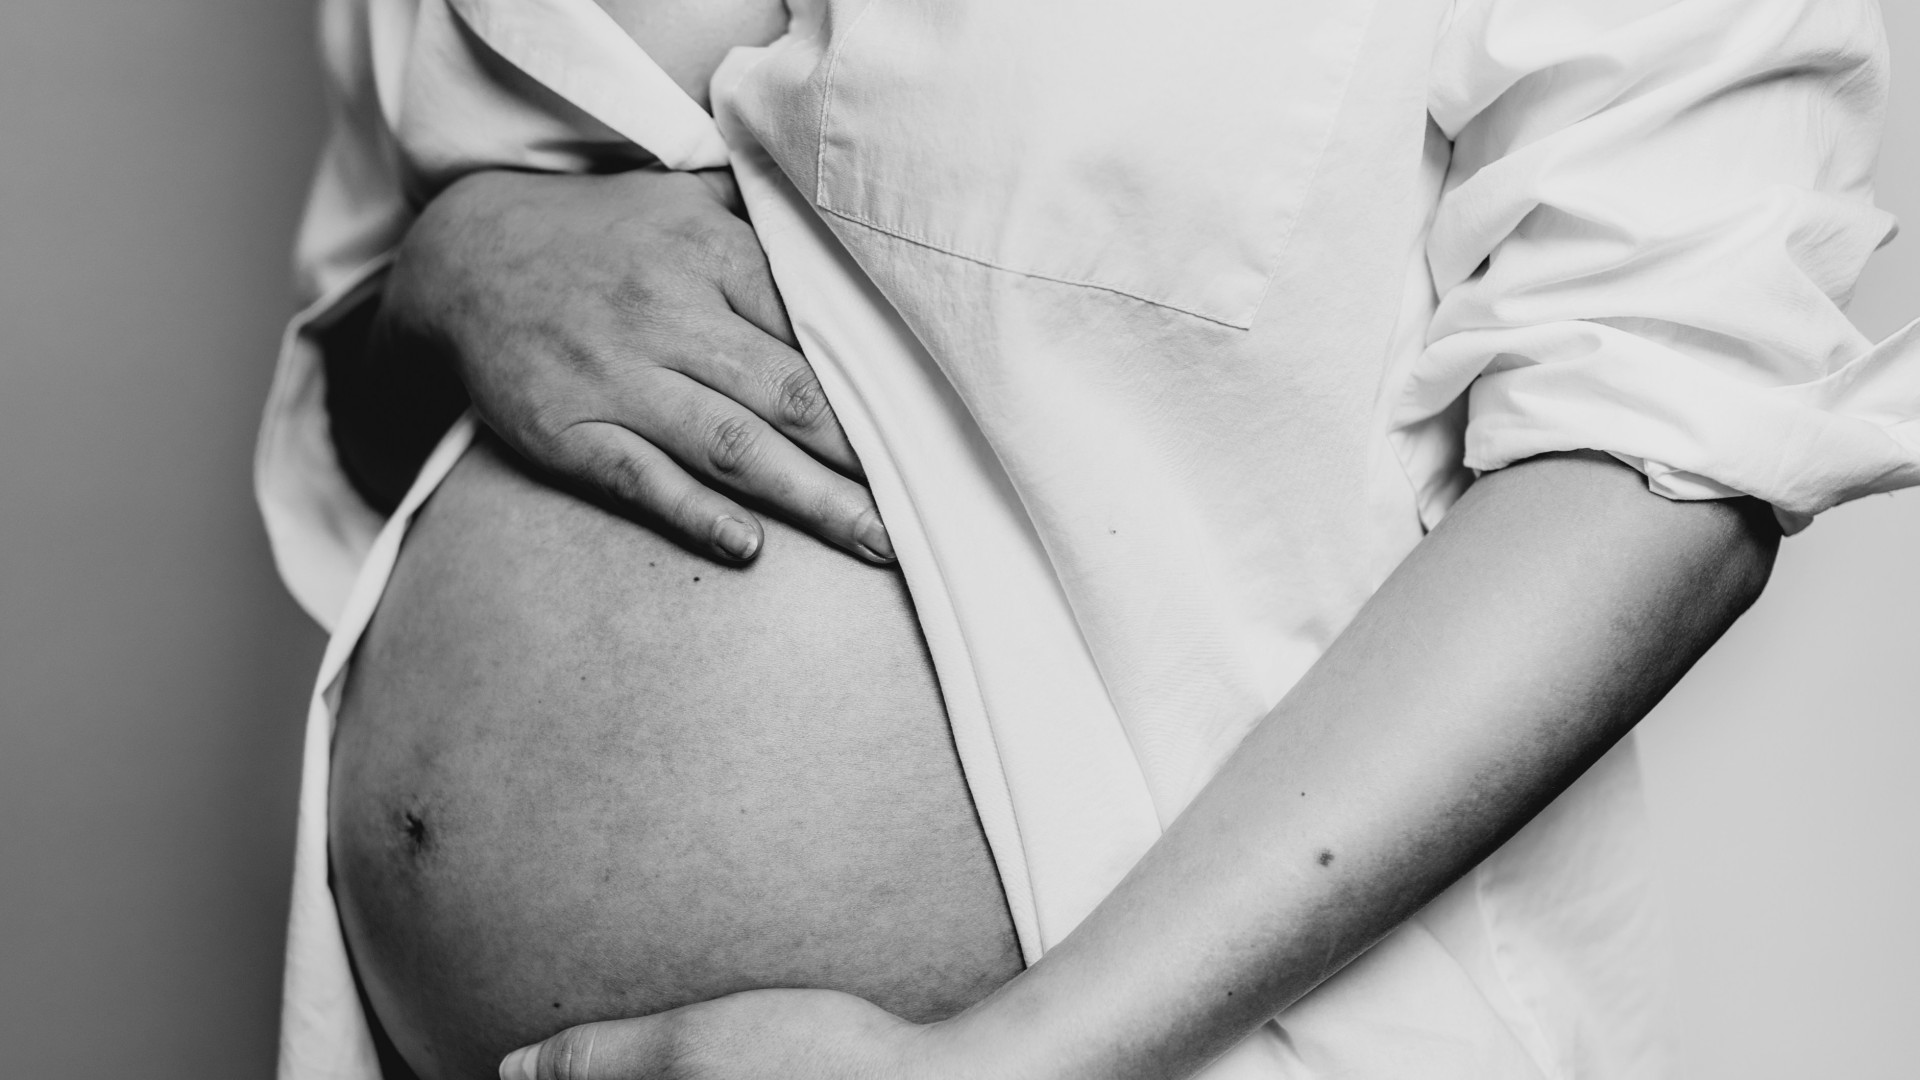 De la grossesse à la parentalité : les défis et les joies du passage à la vie de famille